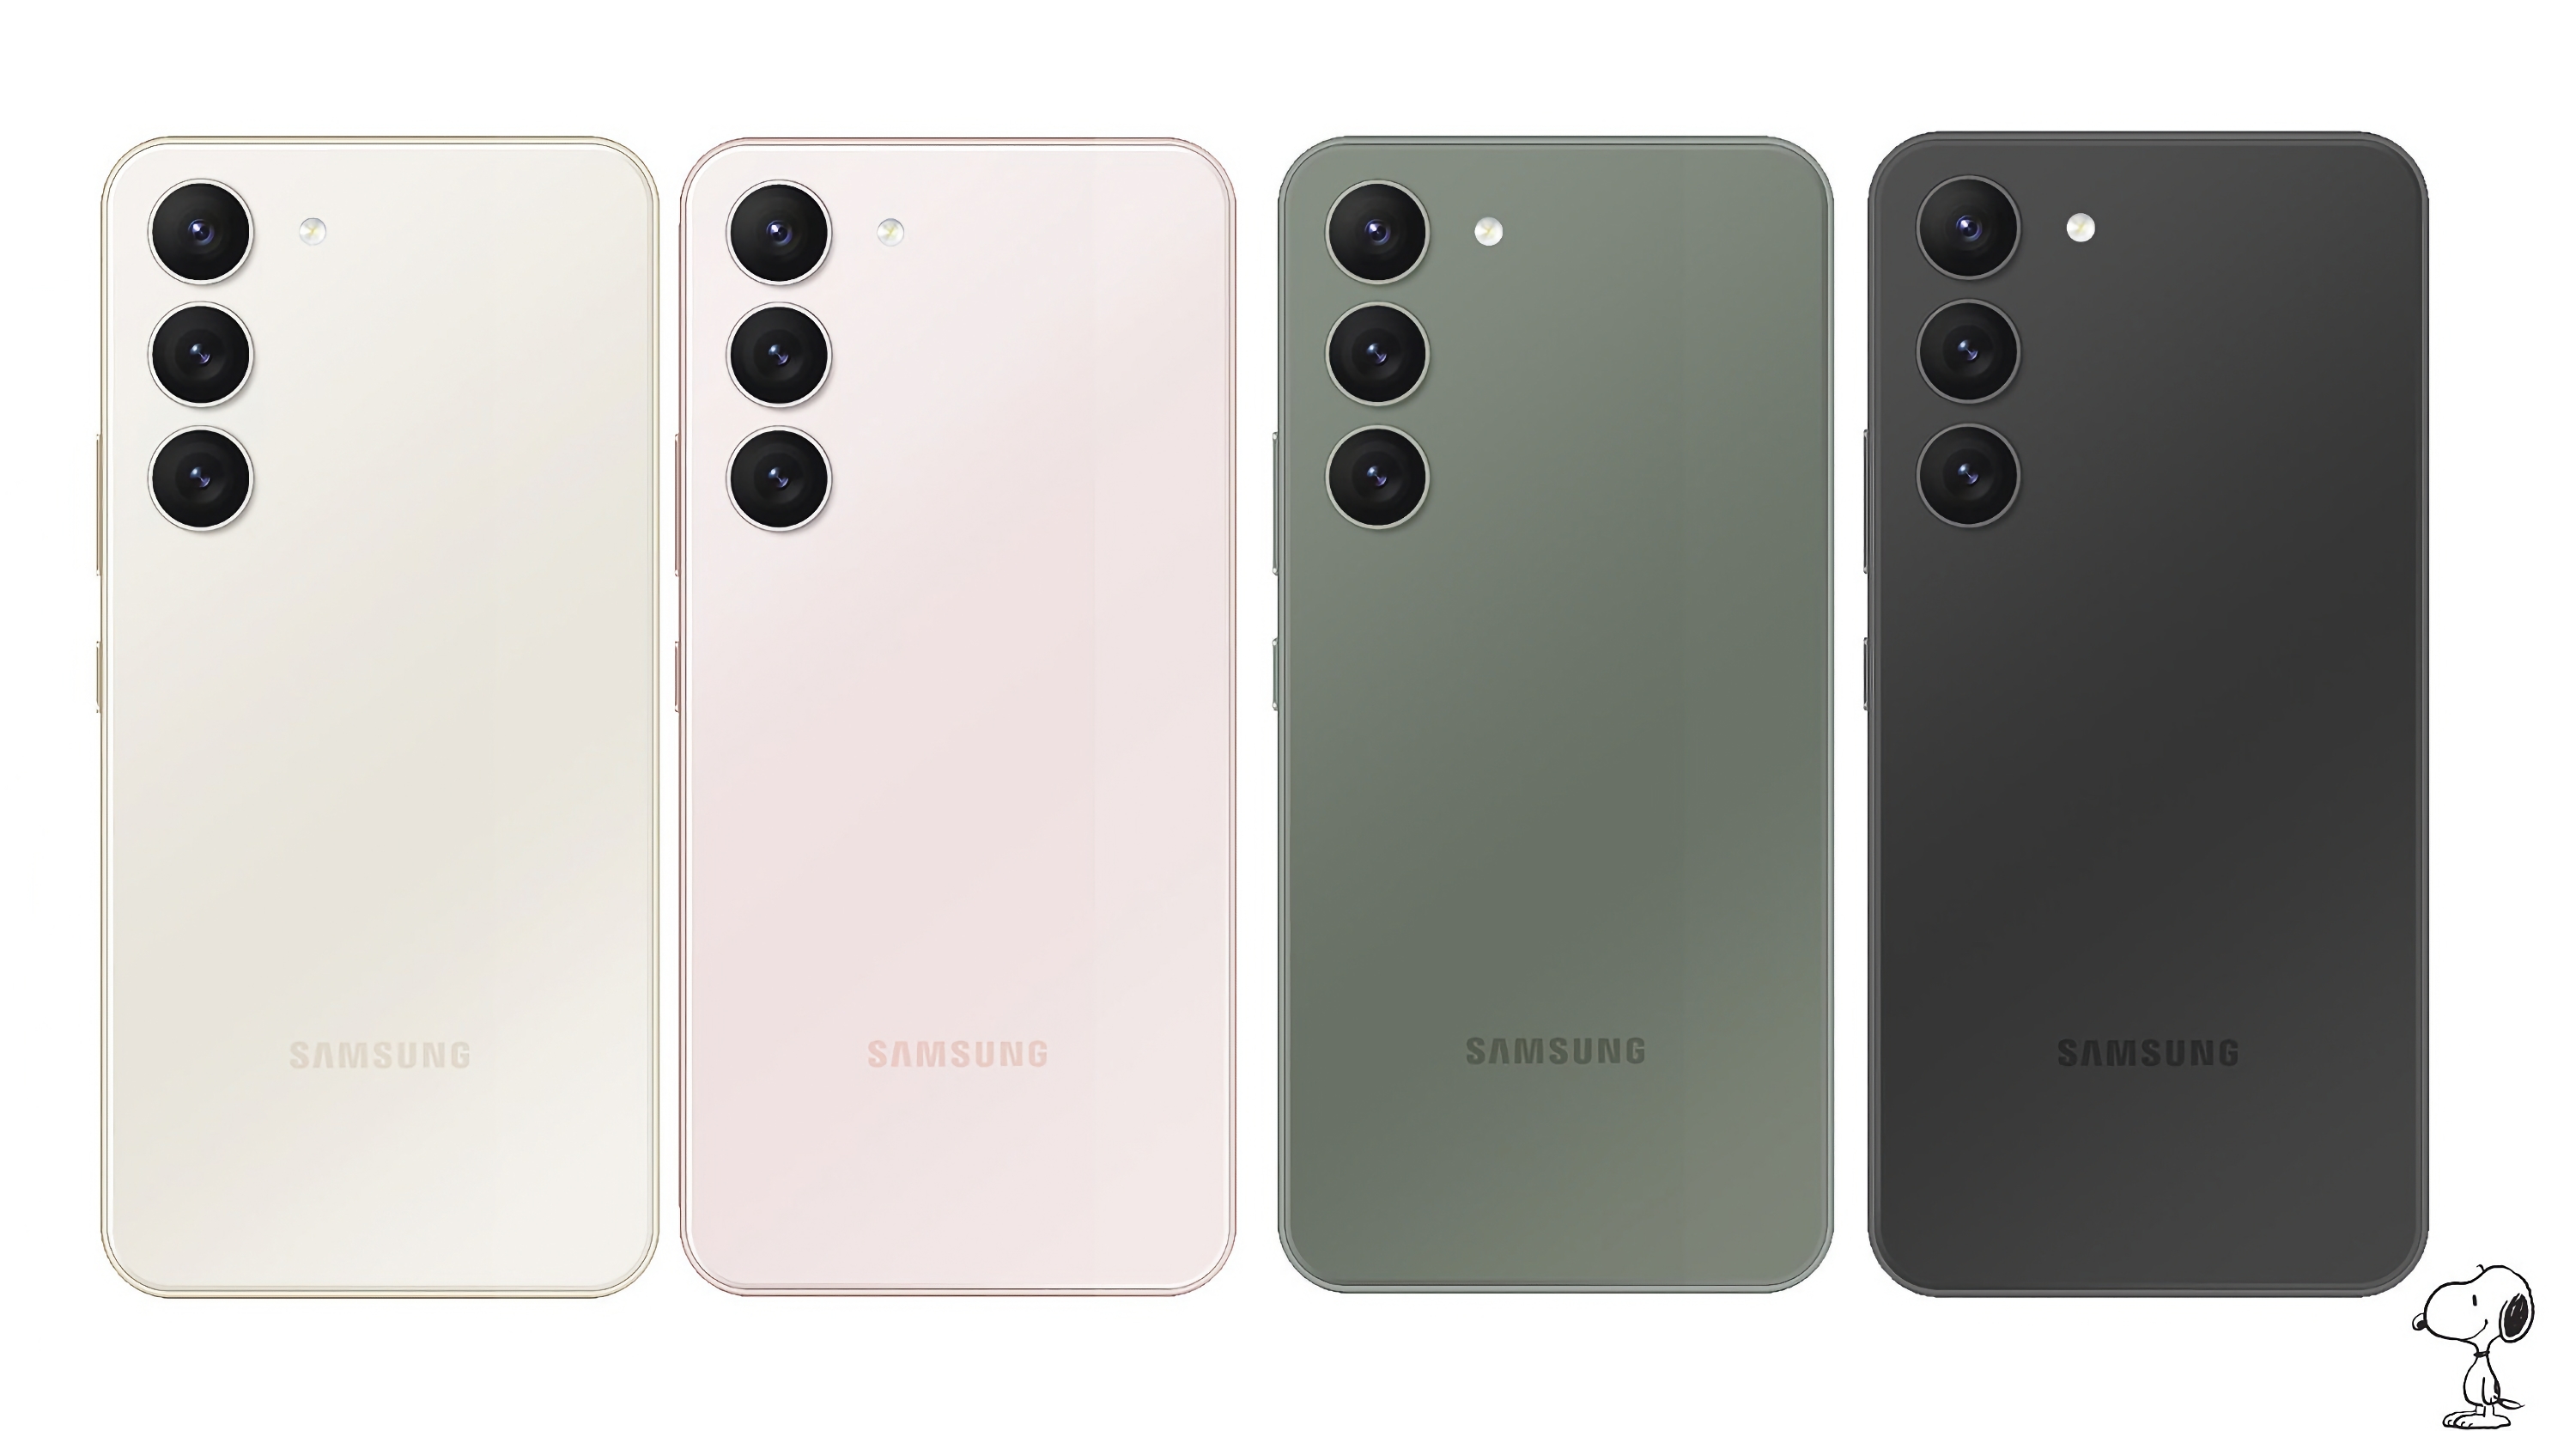 Insider ujawnia zdjęcia prasowe flagowców Samsunga Galaxy S23: nowości pojawią się w czterech kolorach